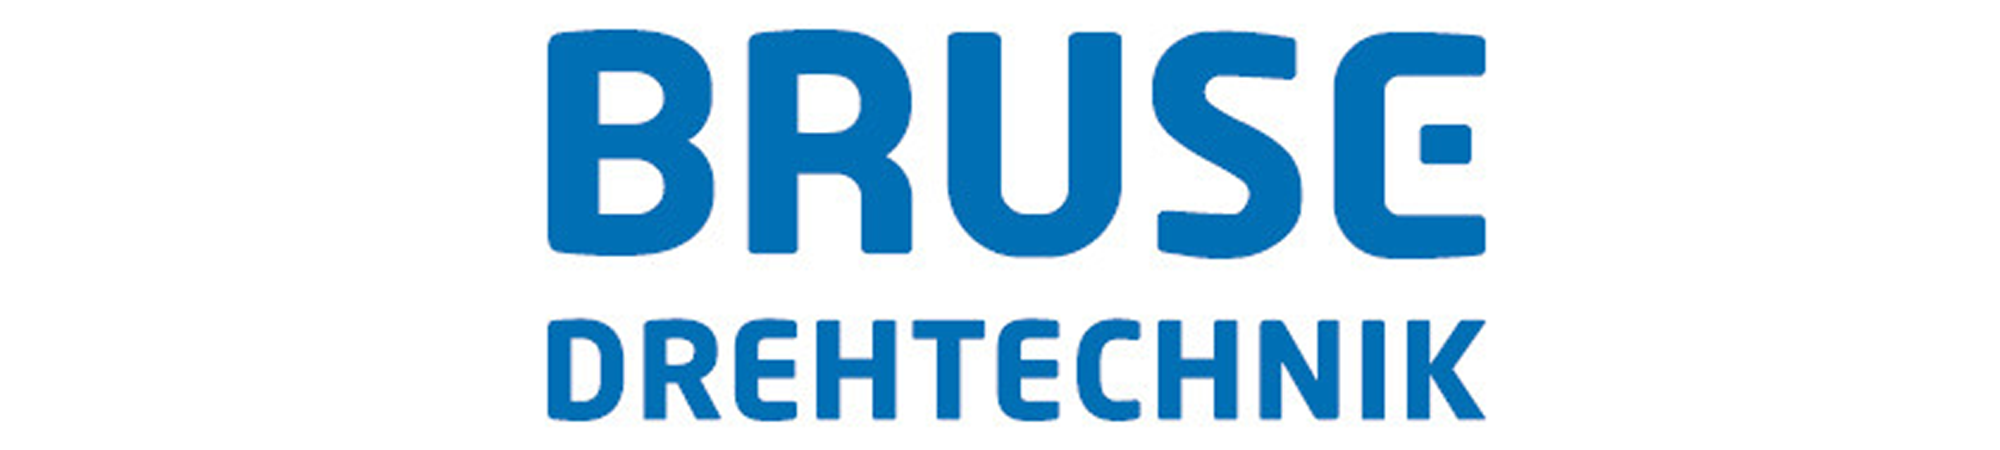 bruse_drehtechnik_logo